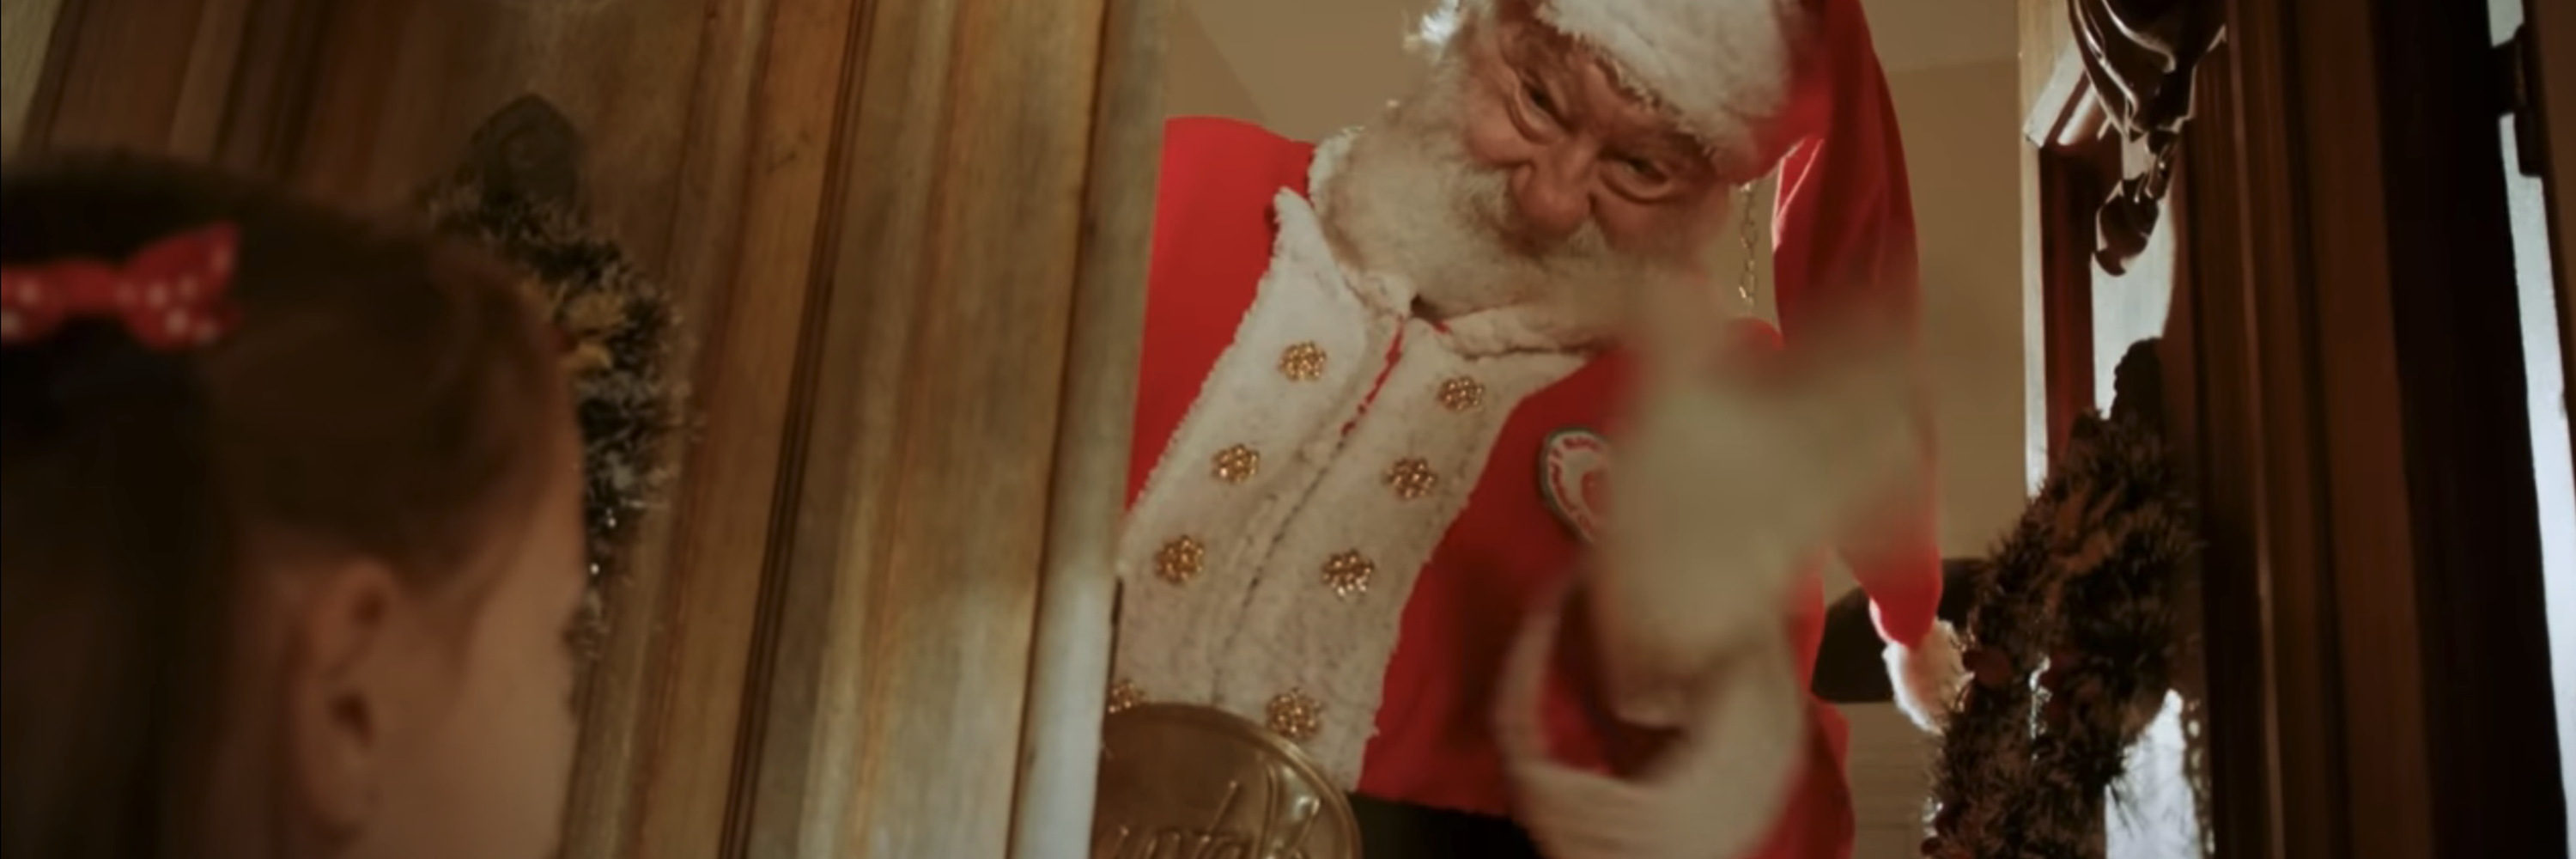 A kid discovers Santa Claus